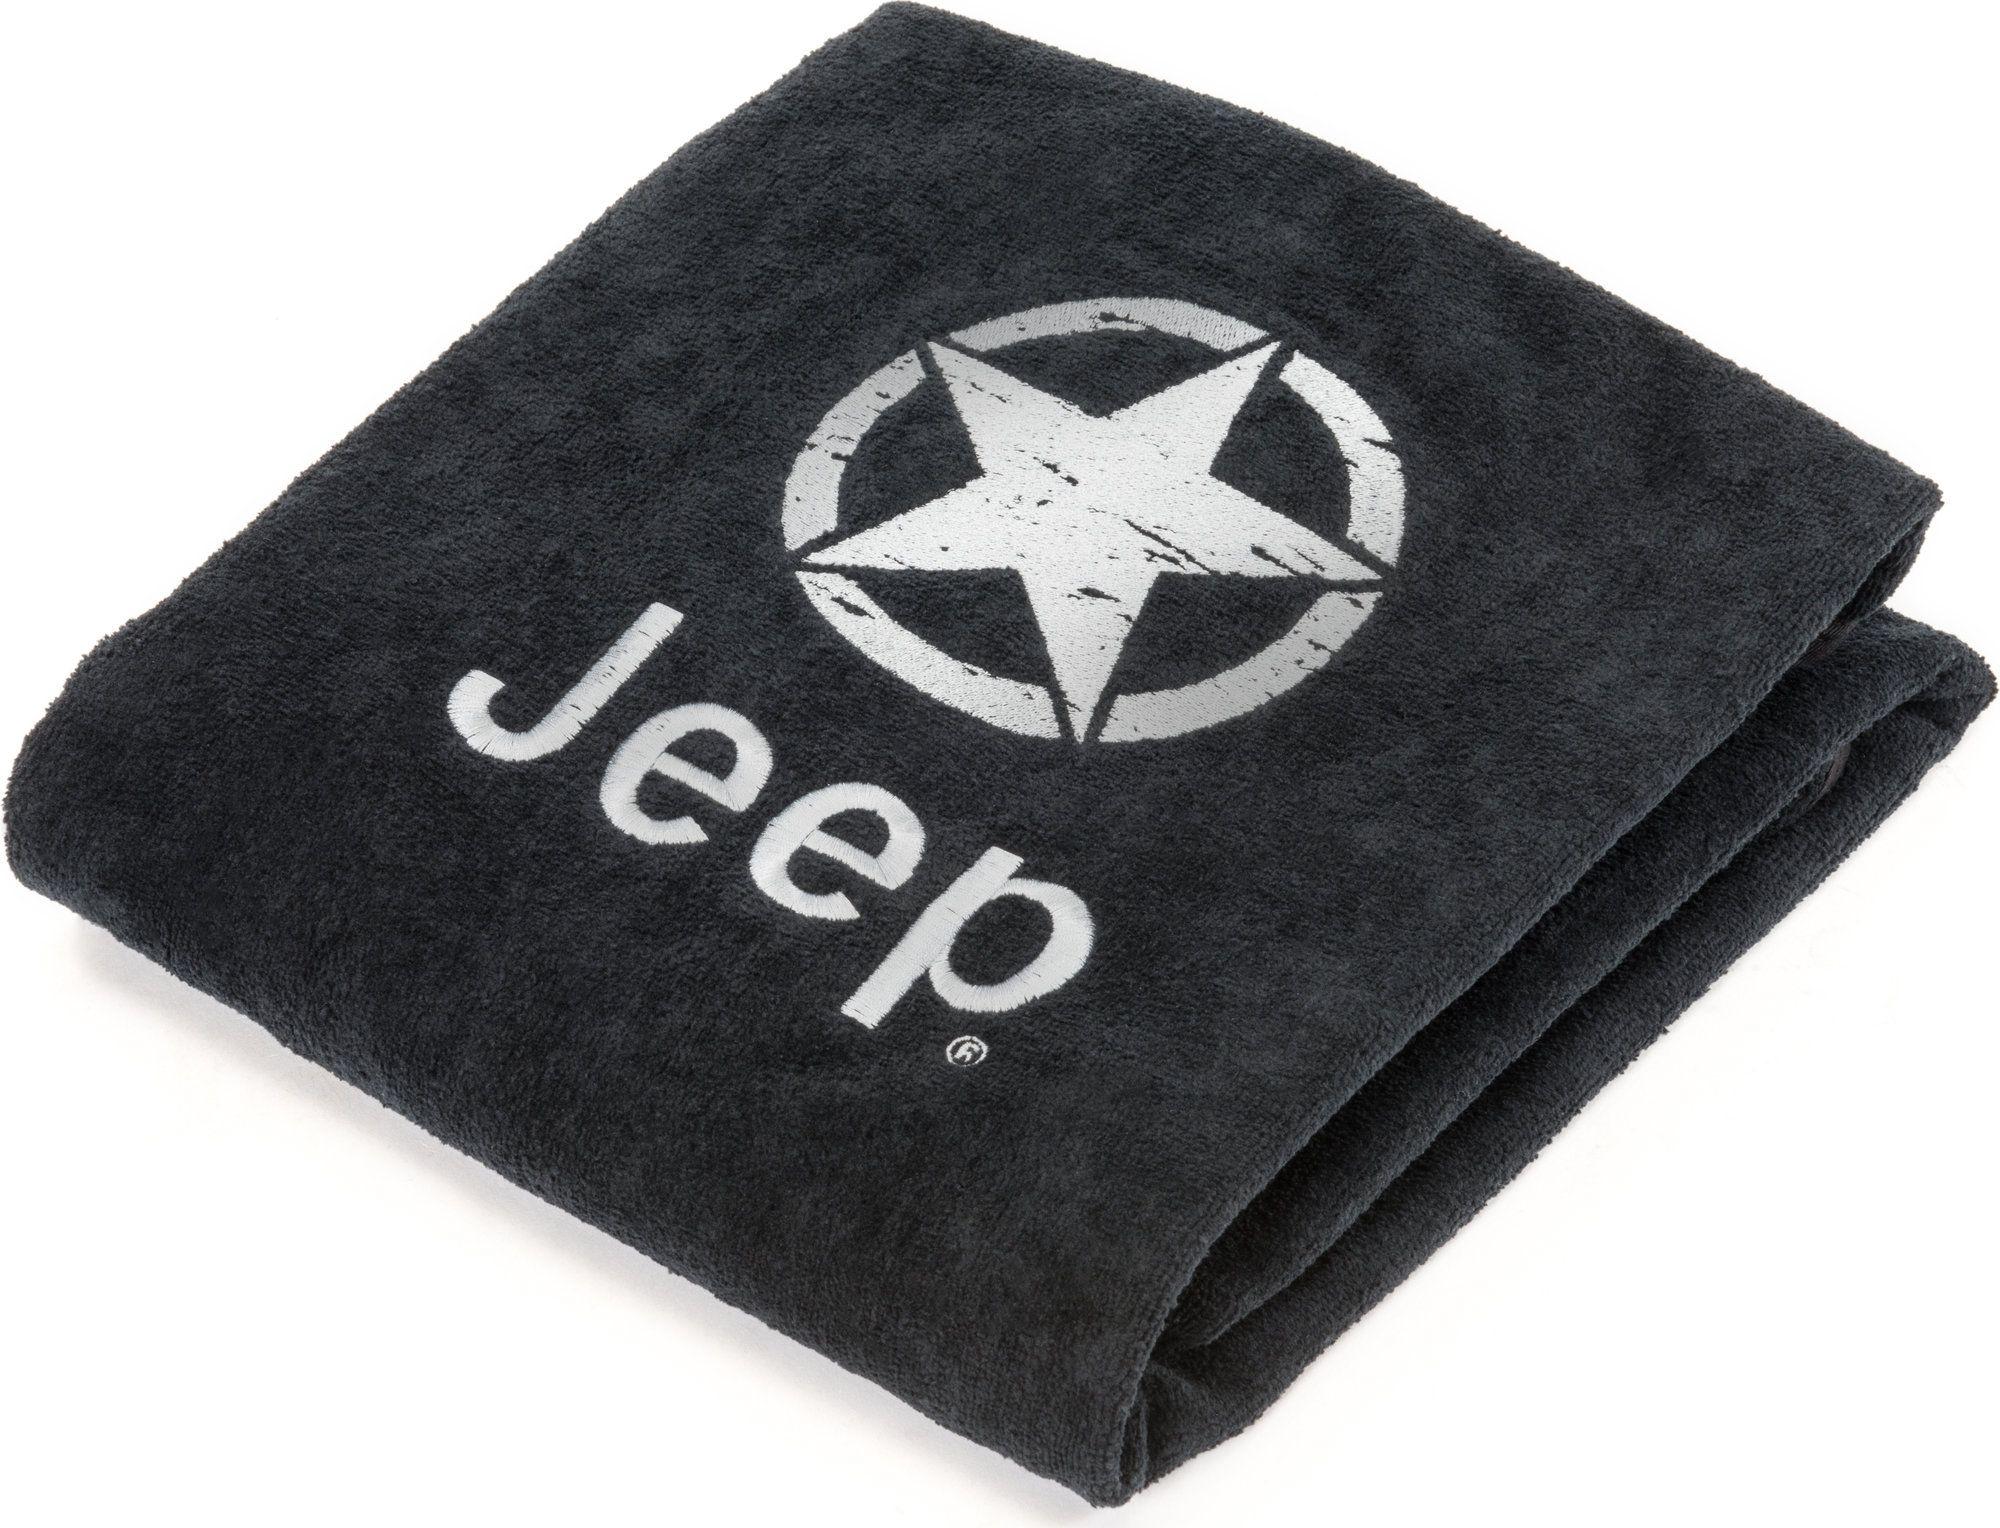 Jeep Star Logo - Insync Jeep Star Logo Car Seat Towel with Jeep Star Logo | Quadratec